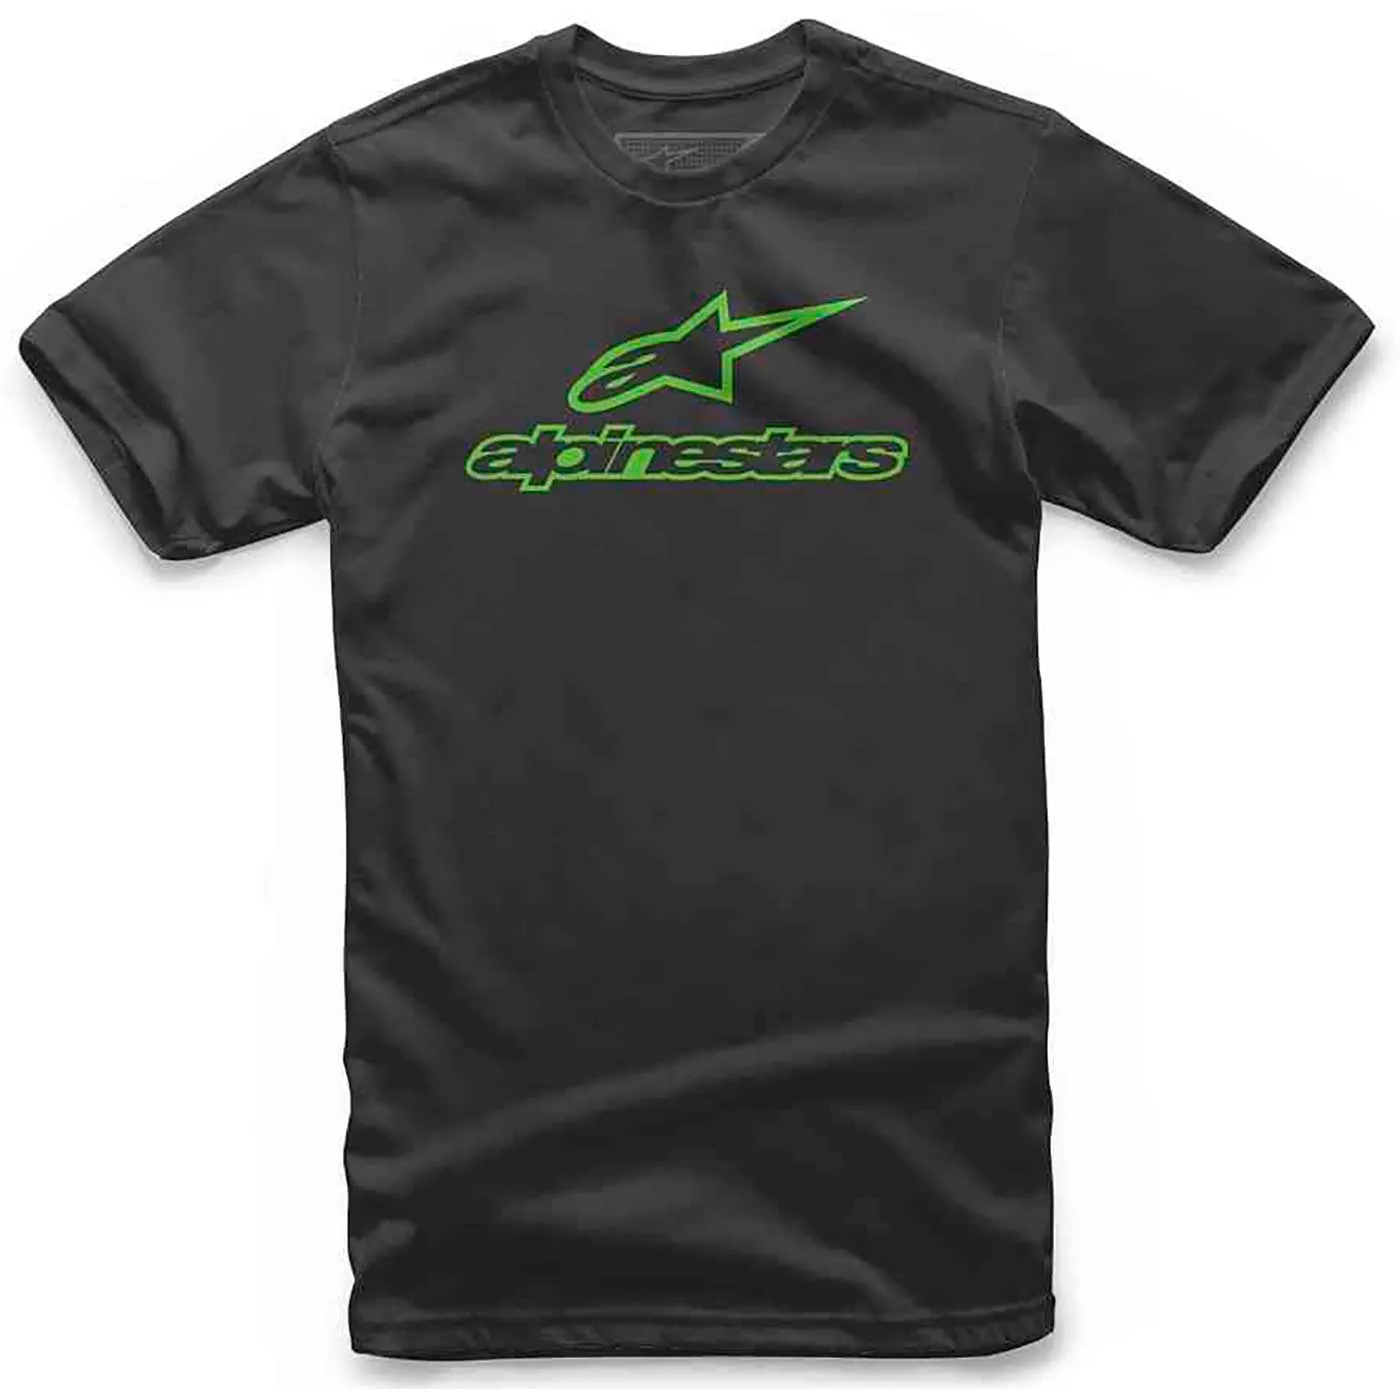 Camiseta Moto ALPINESTARS ALWAYS Negro Verde Talla S